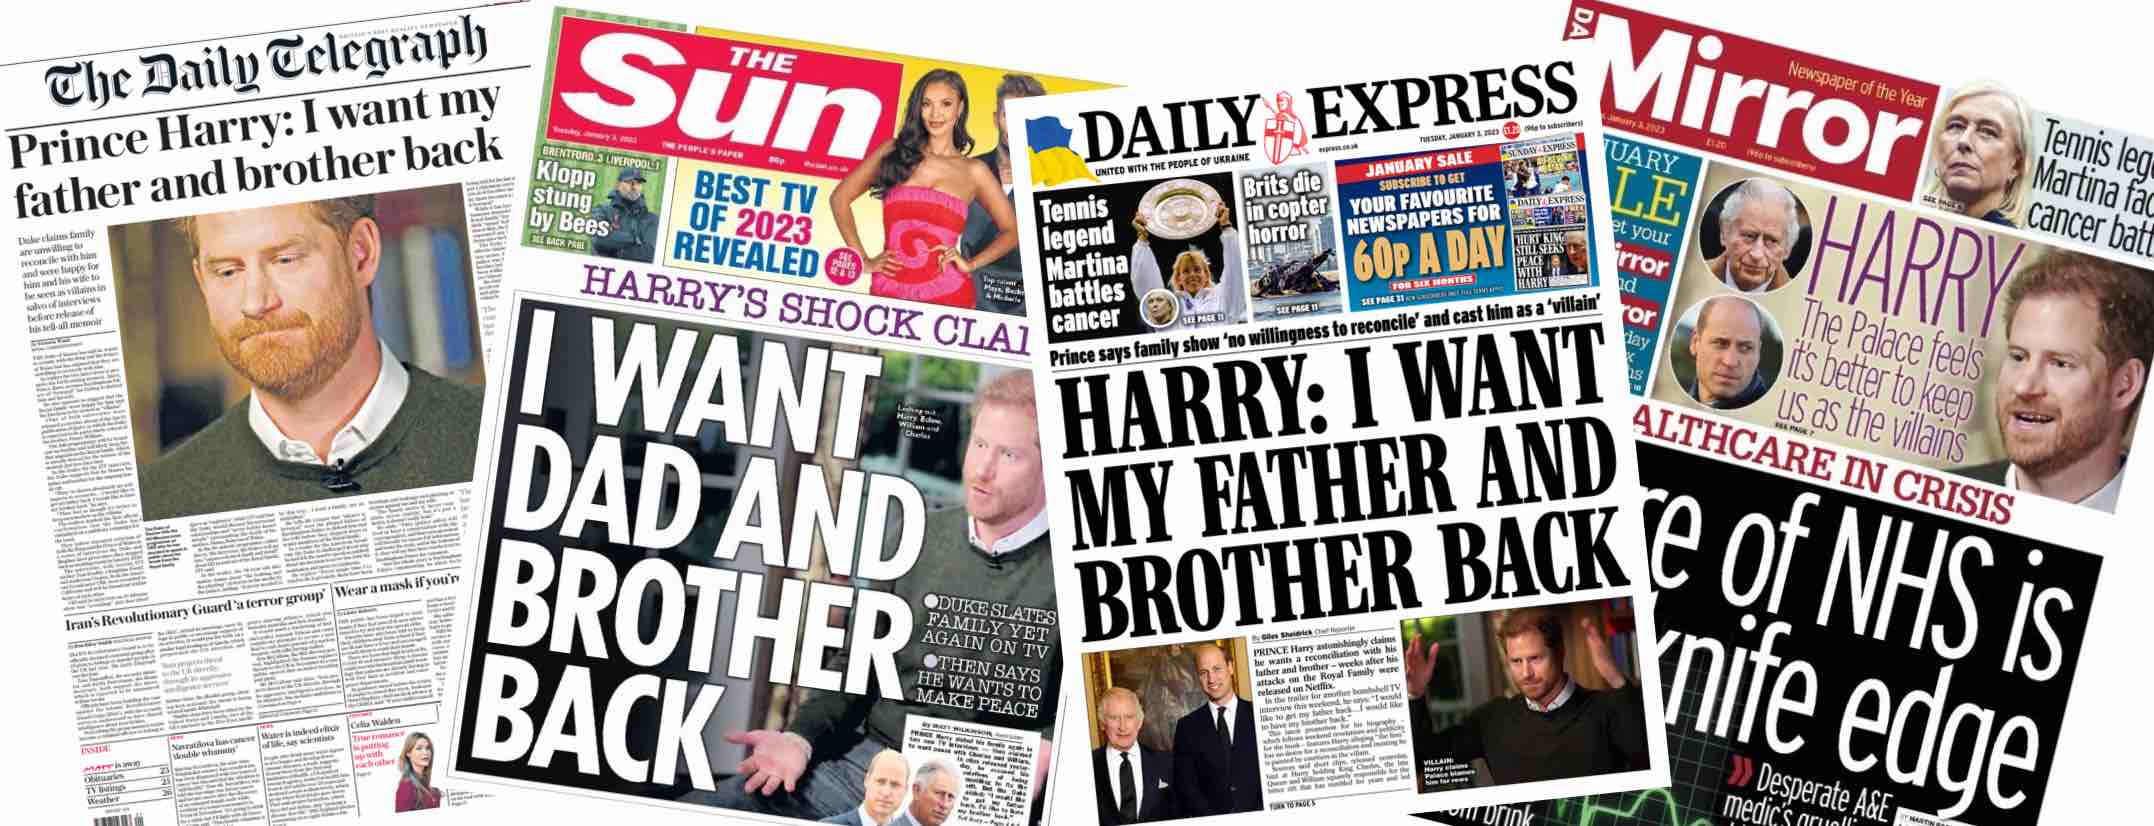 Príncipe Harry livro Spare entrevista jornais britânicos monarquia